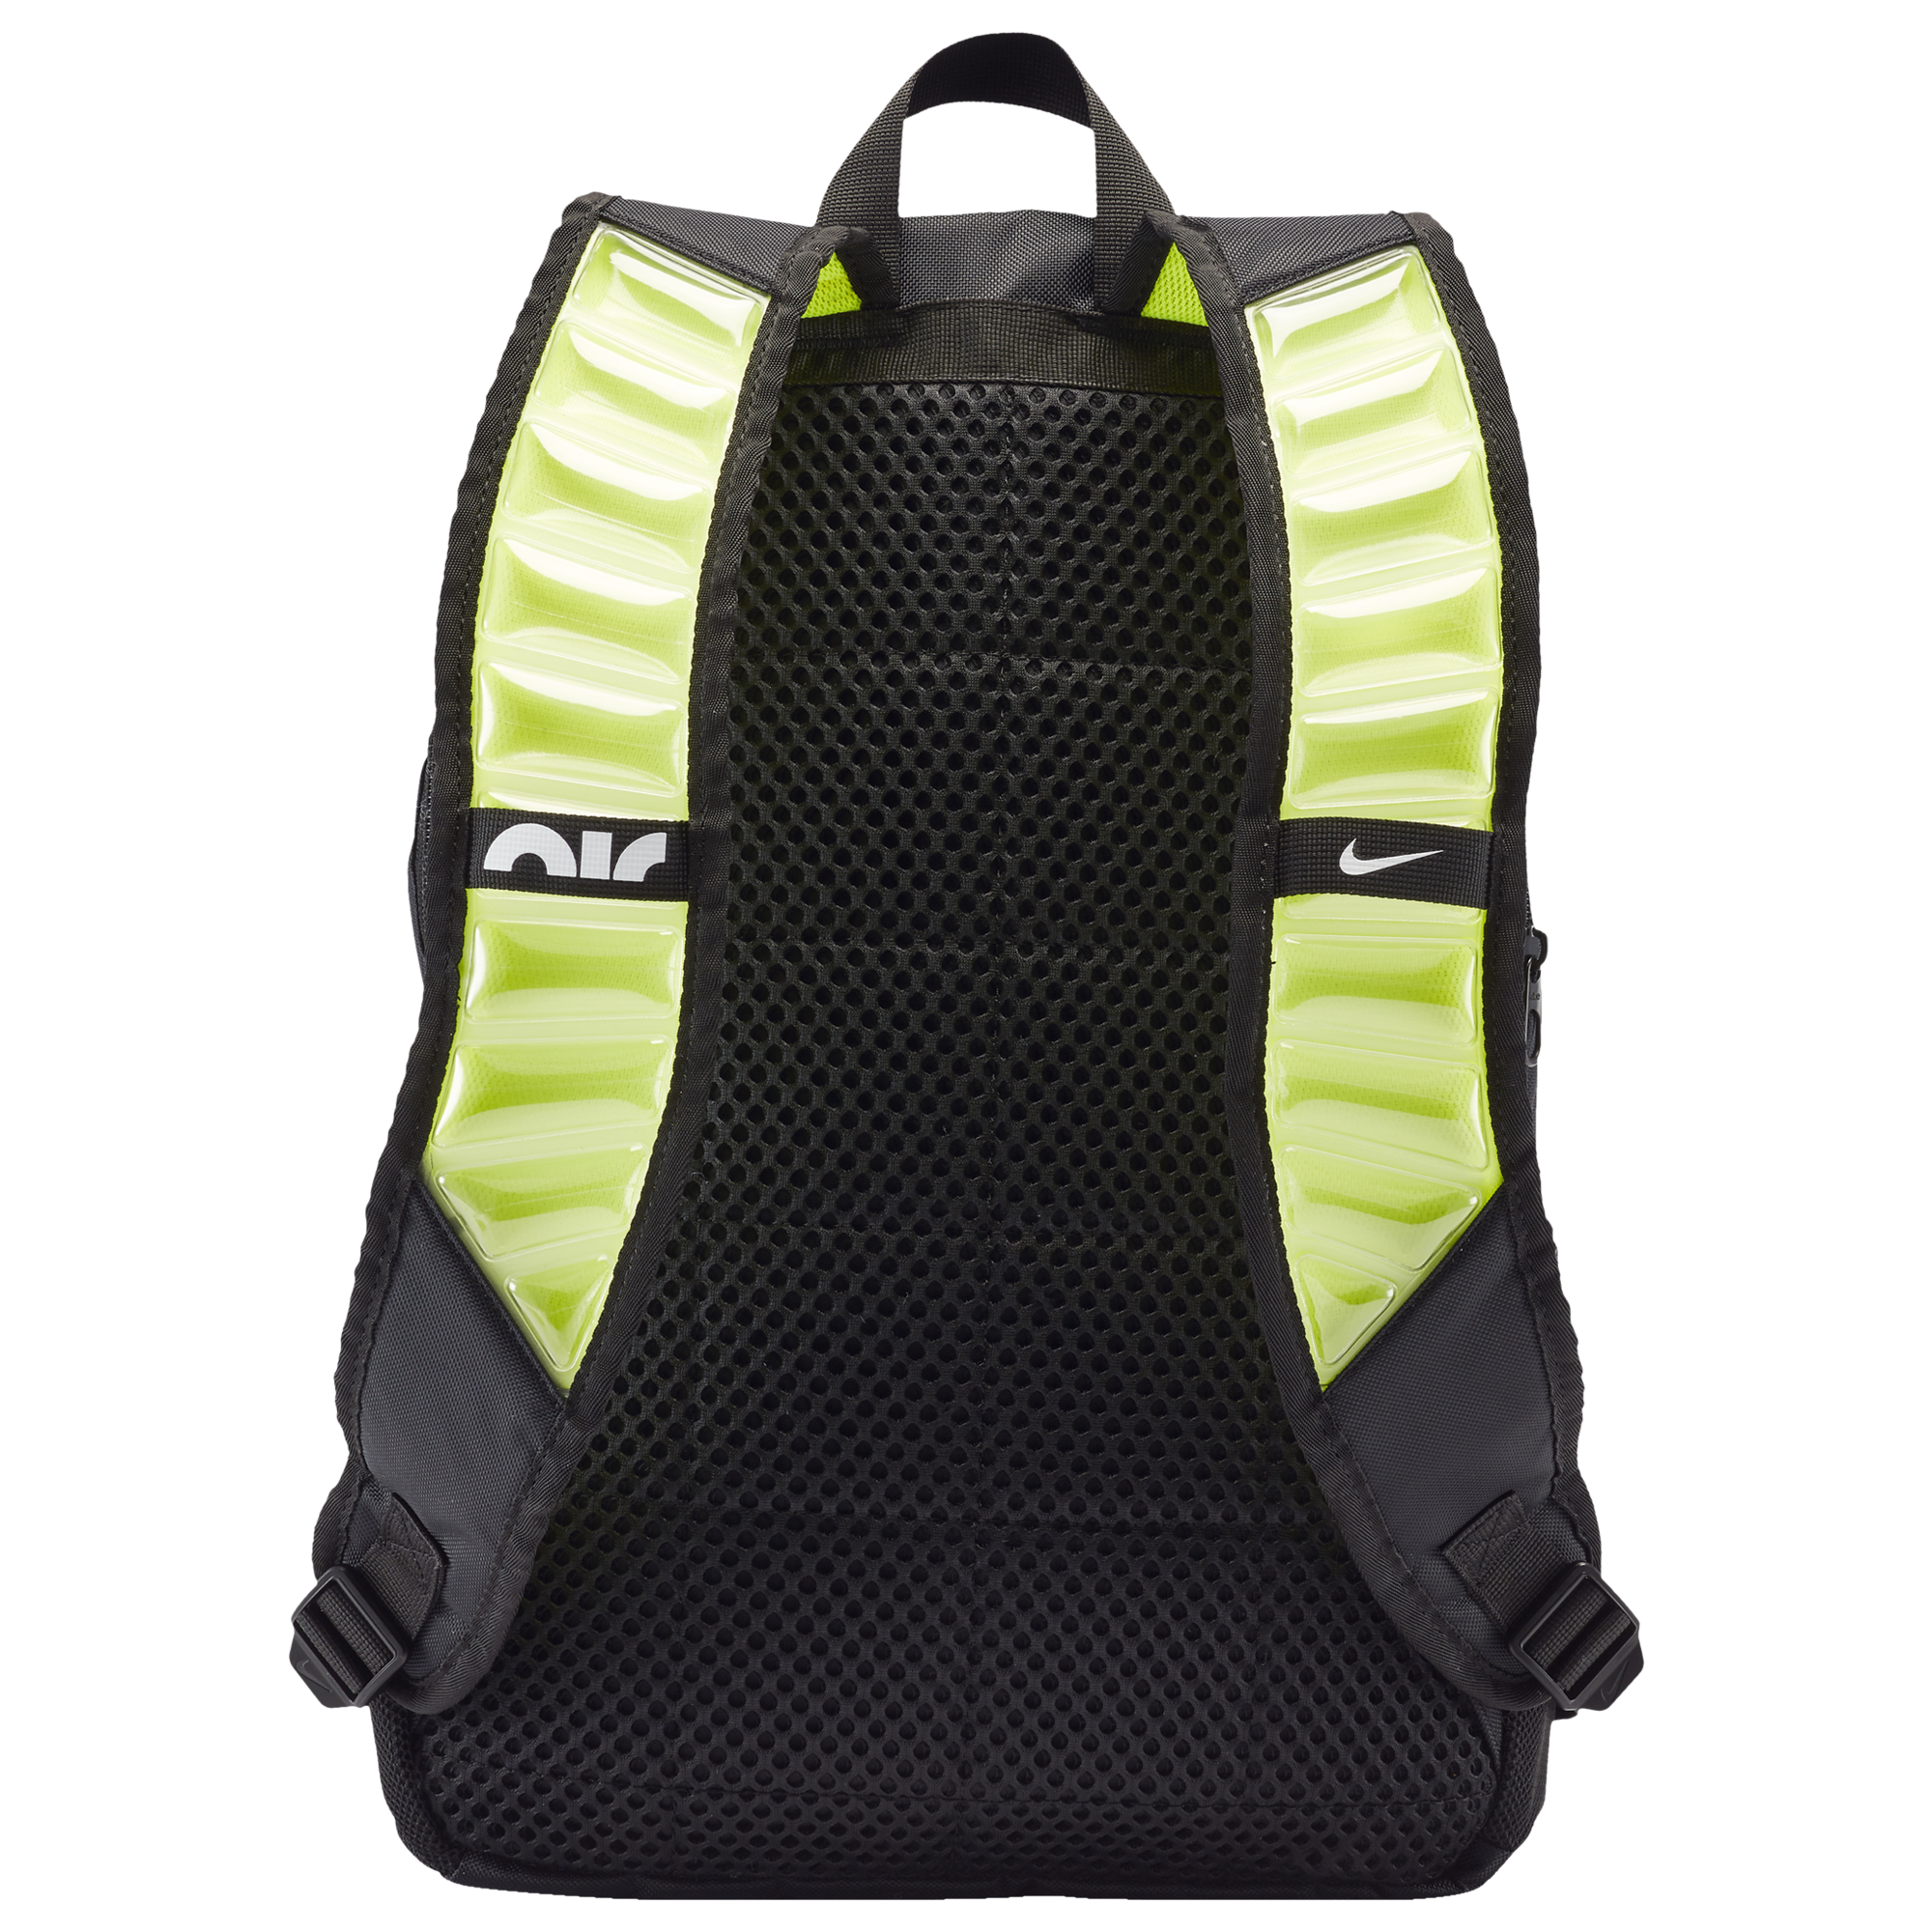 Nike Brasilia Varsity Backpack - Image 2 of 2 Enlarged Image